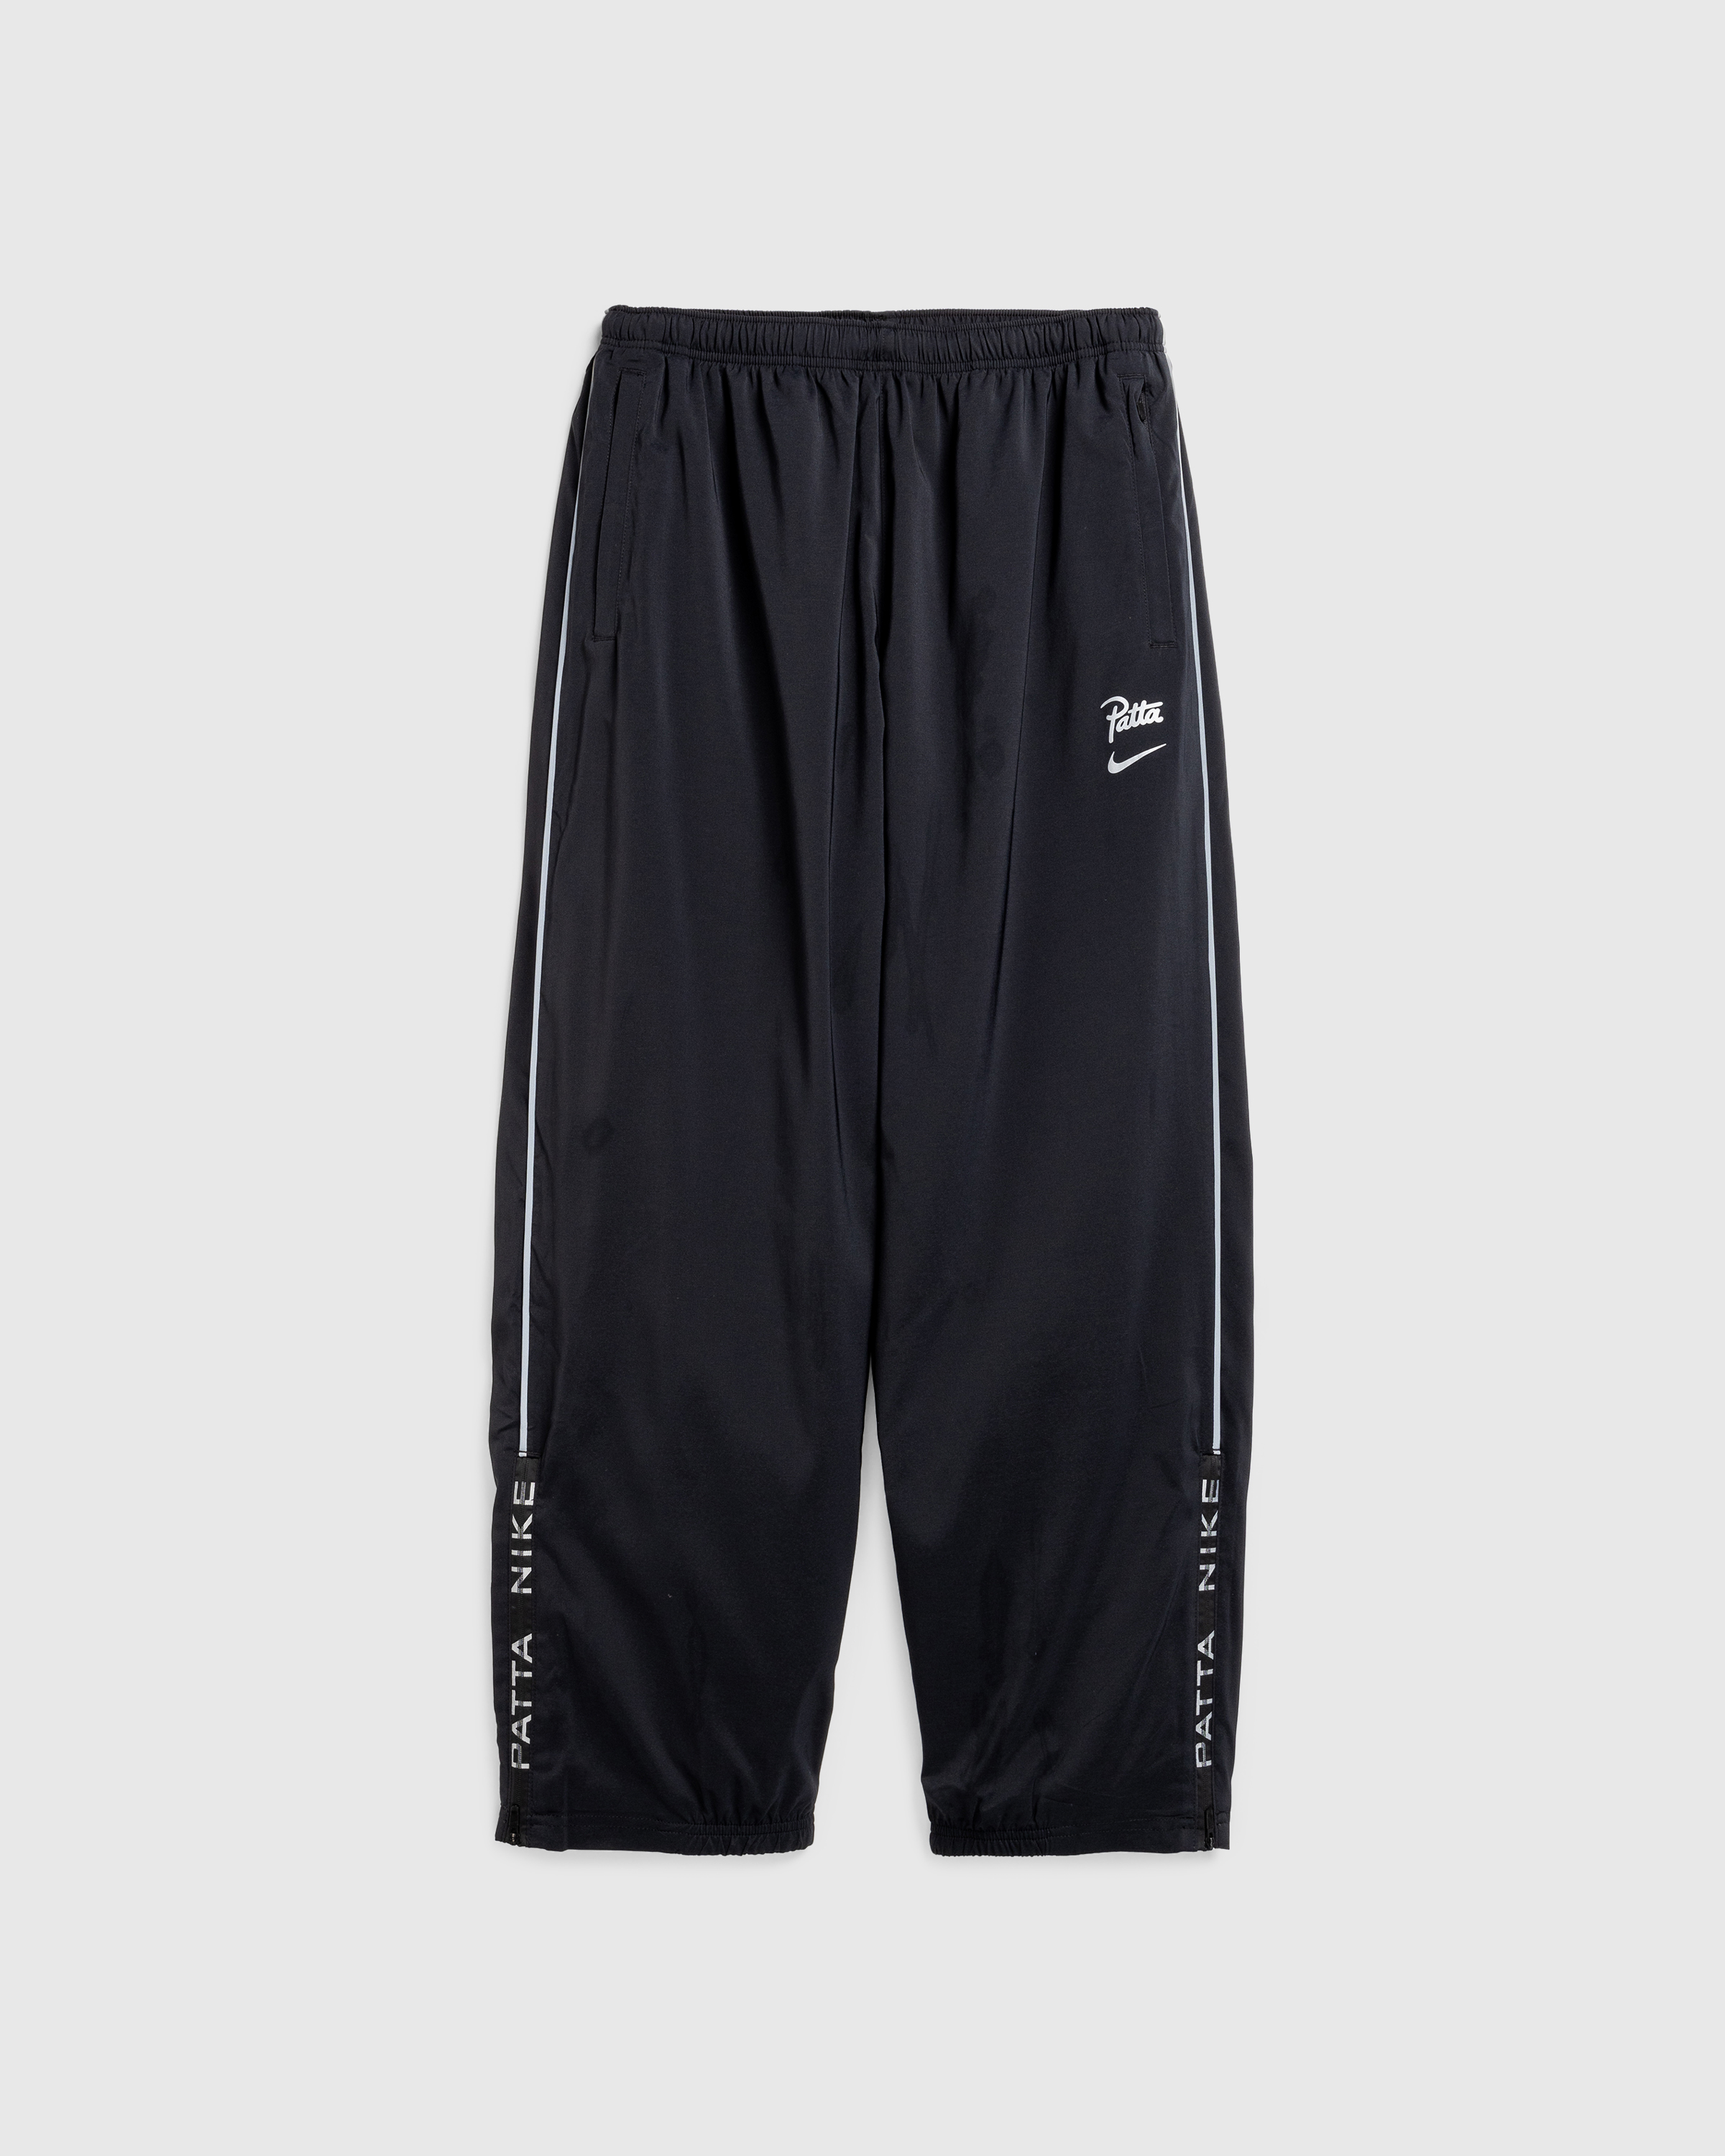 Nike x Patta – Men's Track Pants Black - Track Pants - Black - Image 1